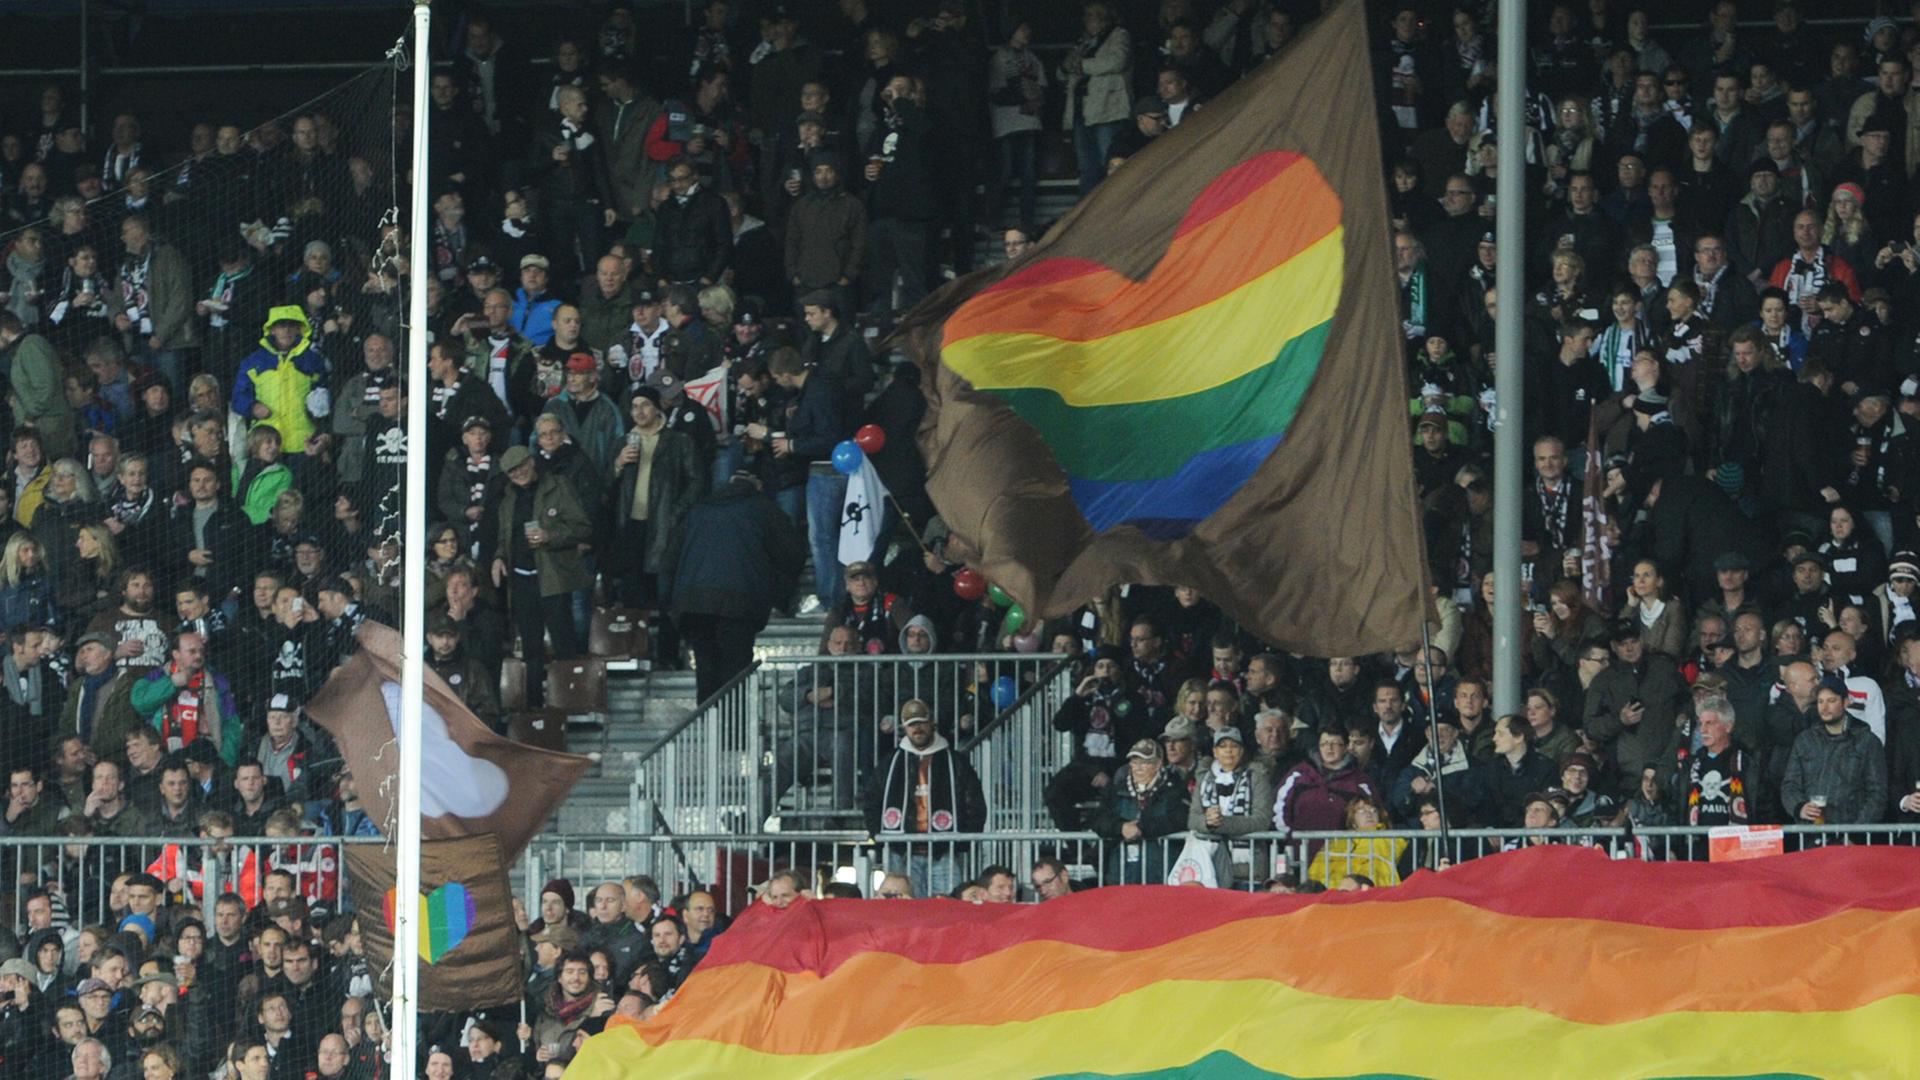 FC St. Pauli - SV Sandhausen am 25.10.2013 im Millerntorstadion in Hamburg. Die Paulifans setzten mit Transparenten ein Zeichen gegen Homophobie und Sexismus.